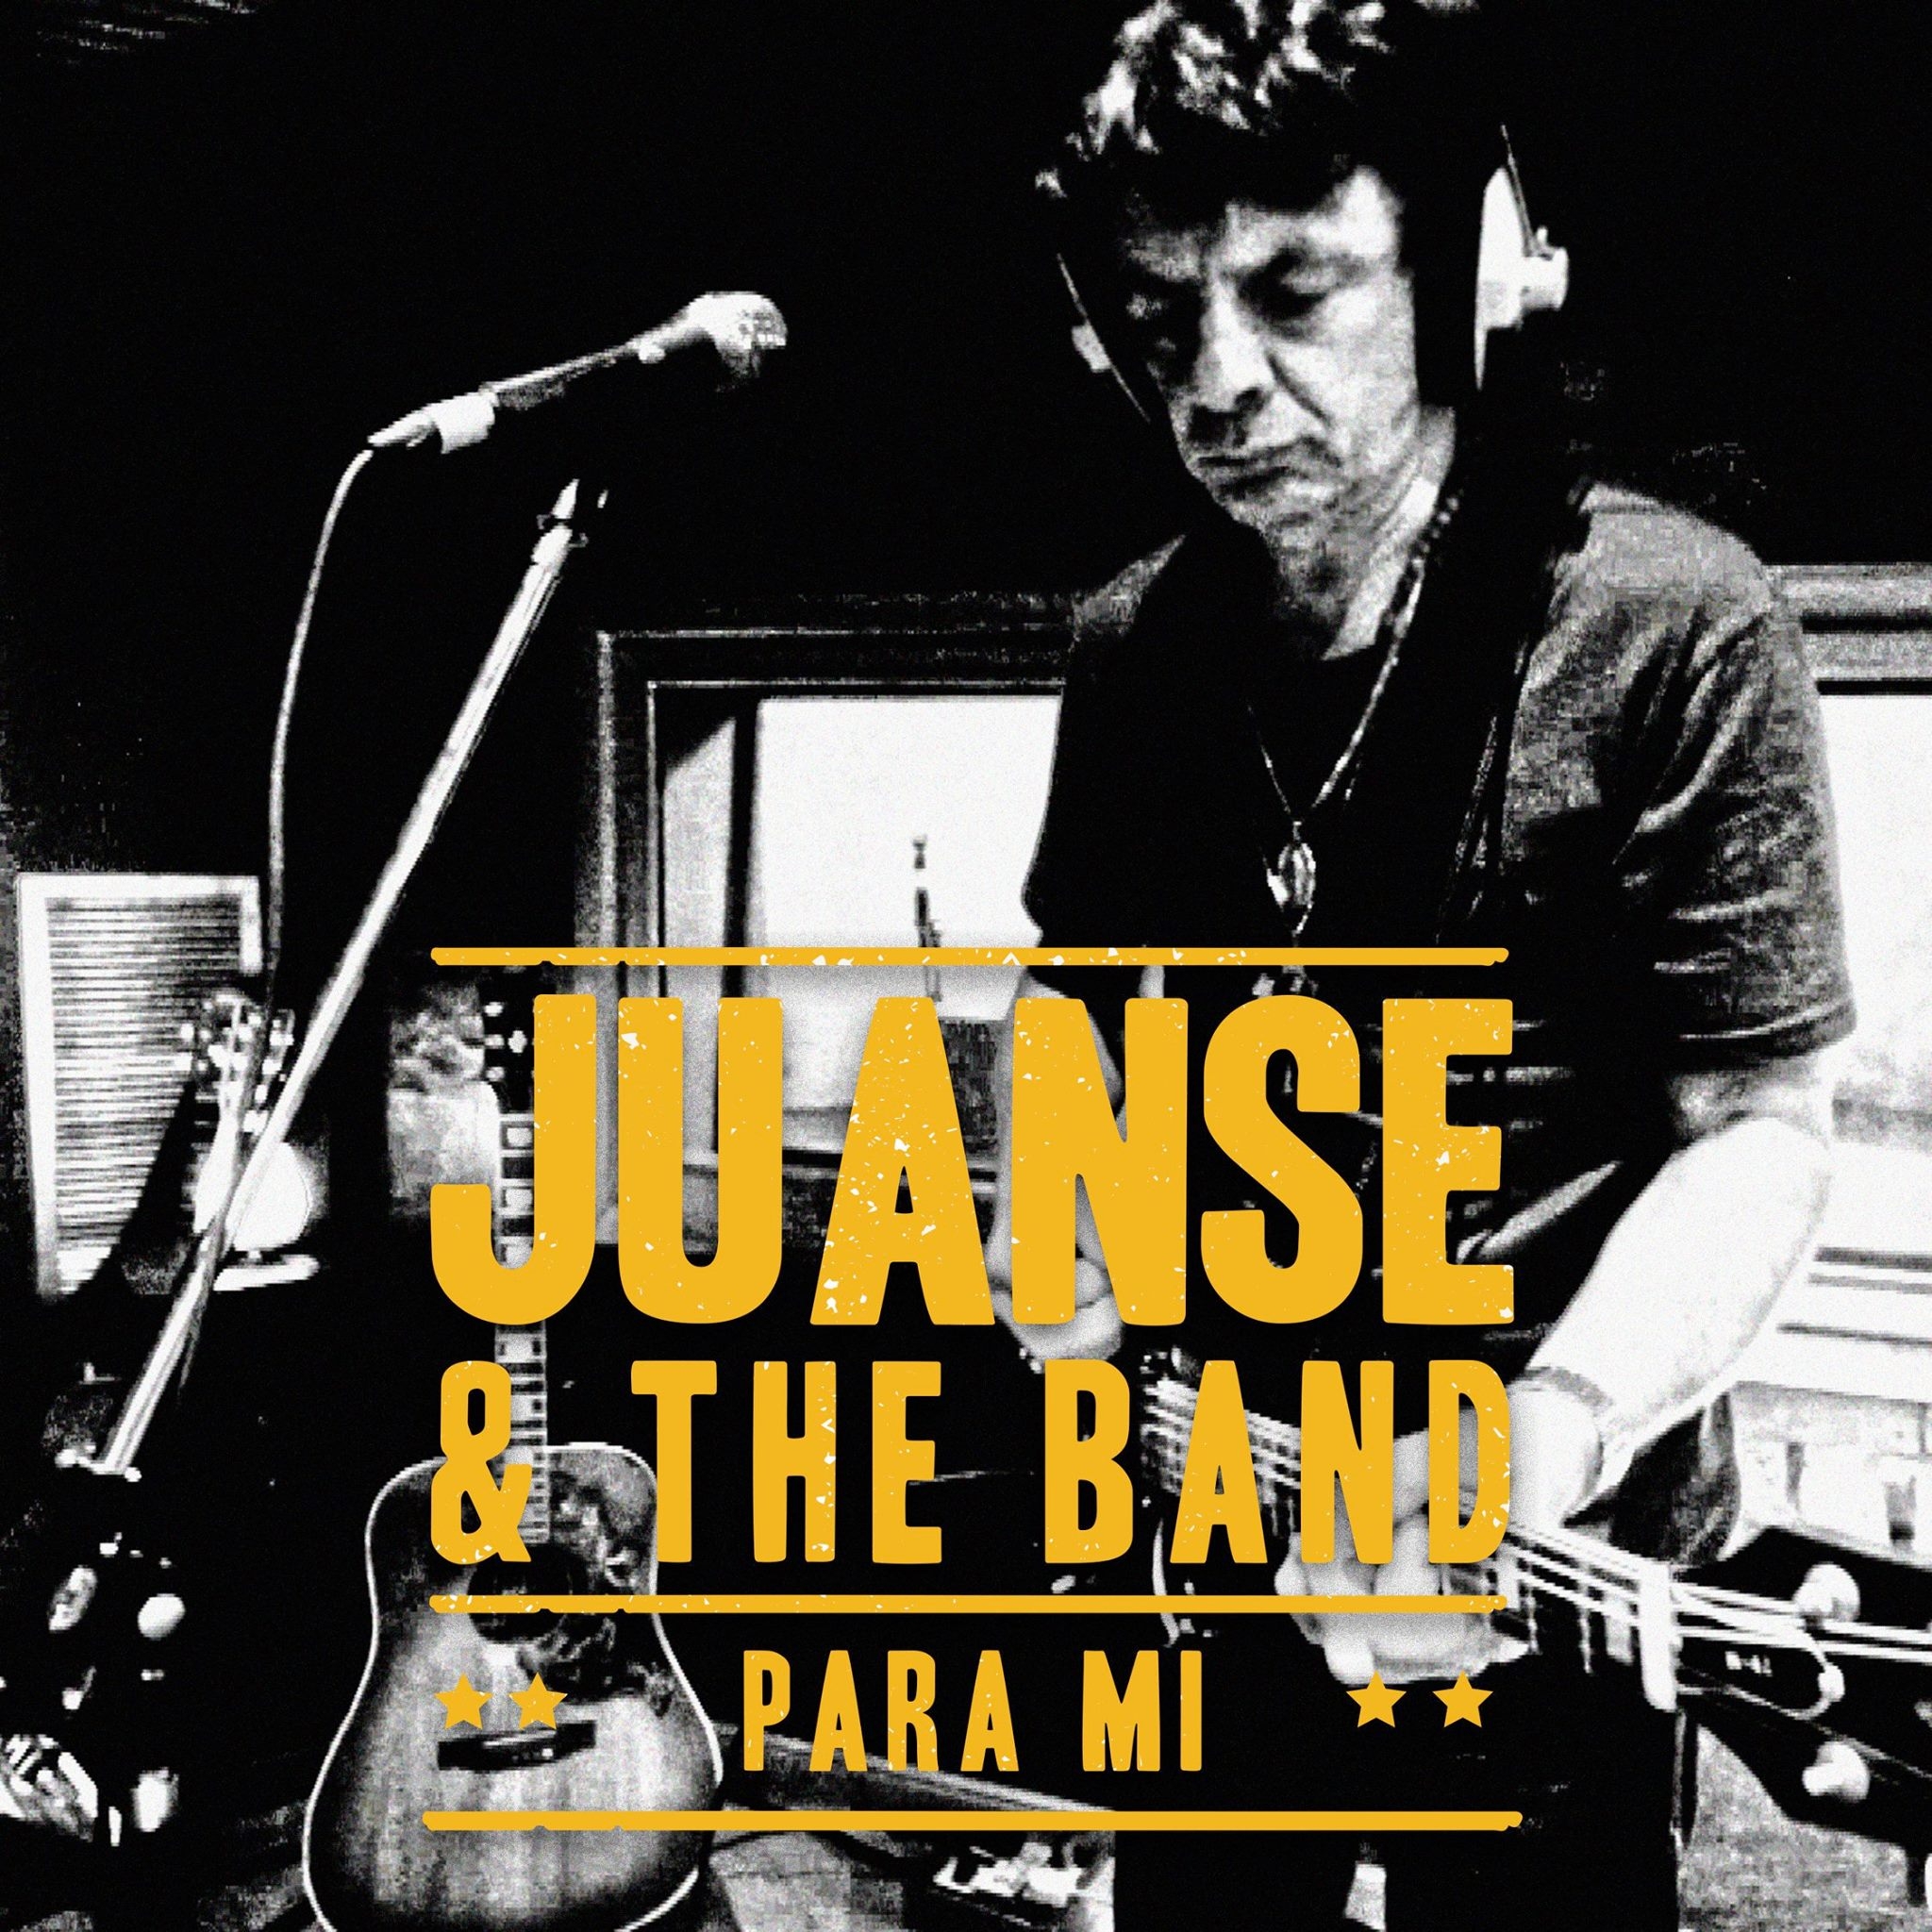 Juanse presenta "Para Mi", nuevo single y agrega show en La Trastienda.